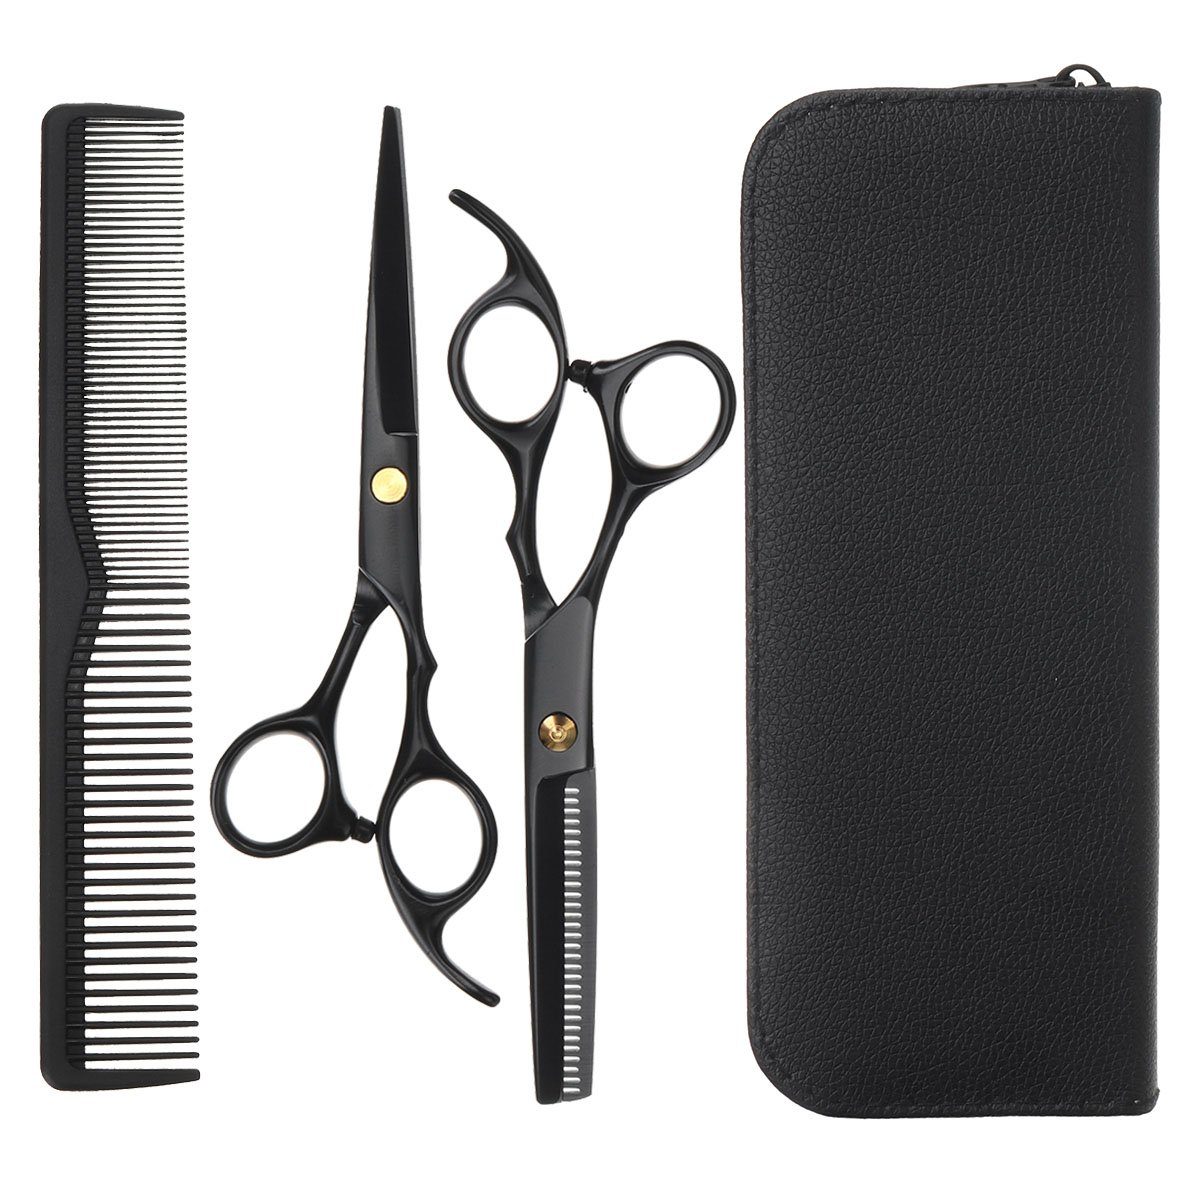 Materialien Professionelles Qualitäts-Friseurscheren-Set, ausgewählte für Hochwertigkeit Haarschere besondere NASUM